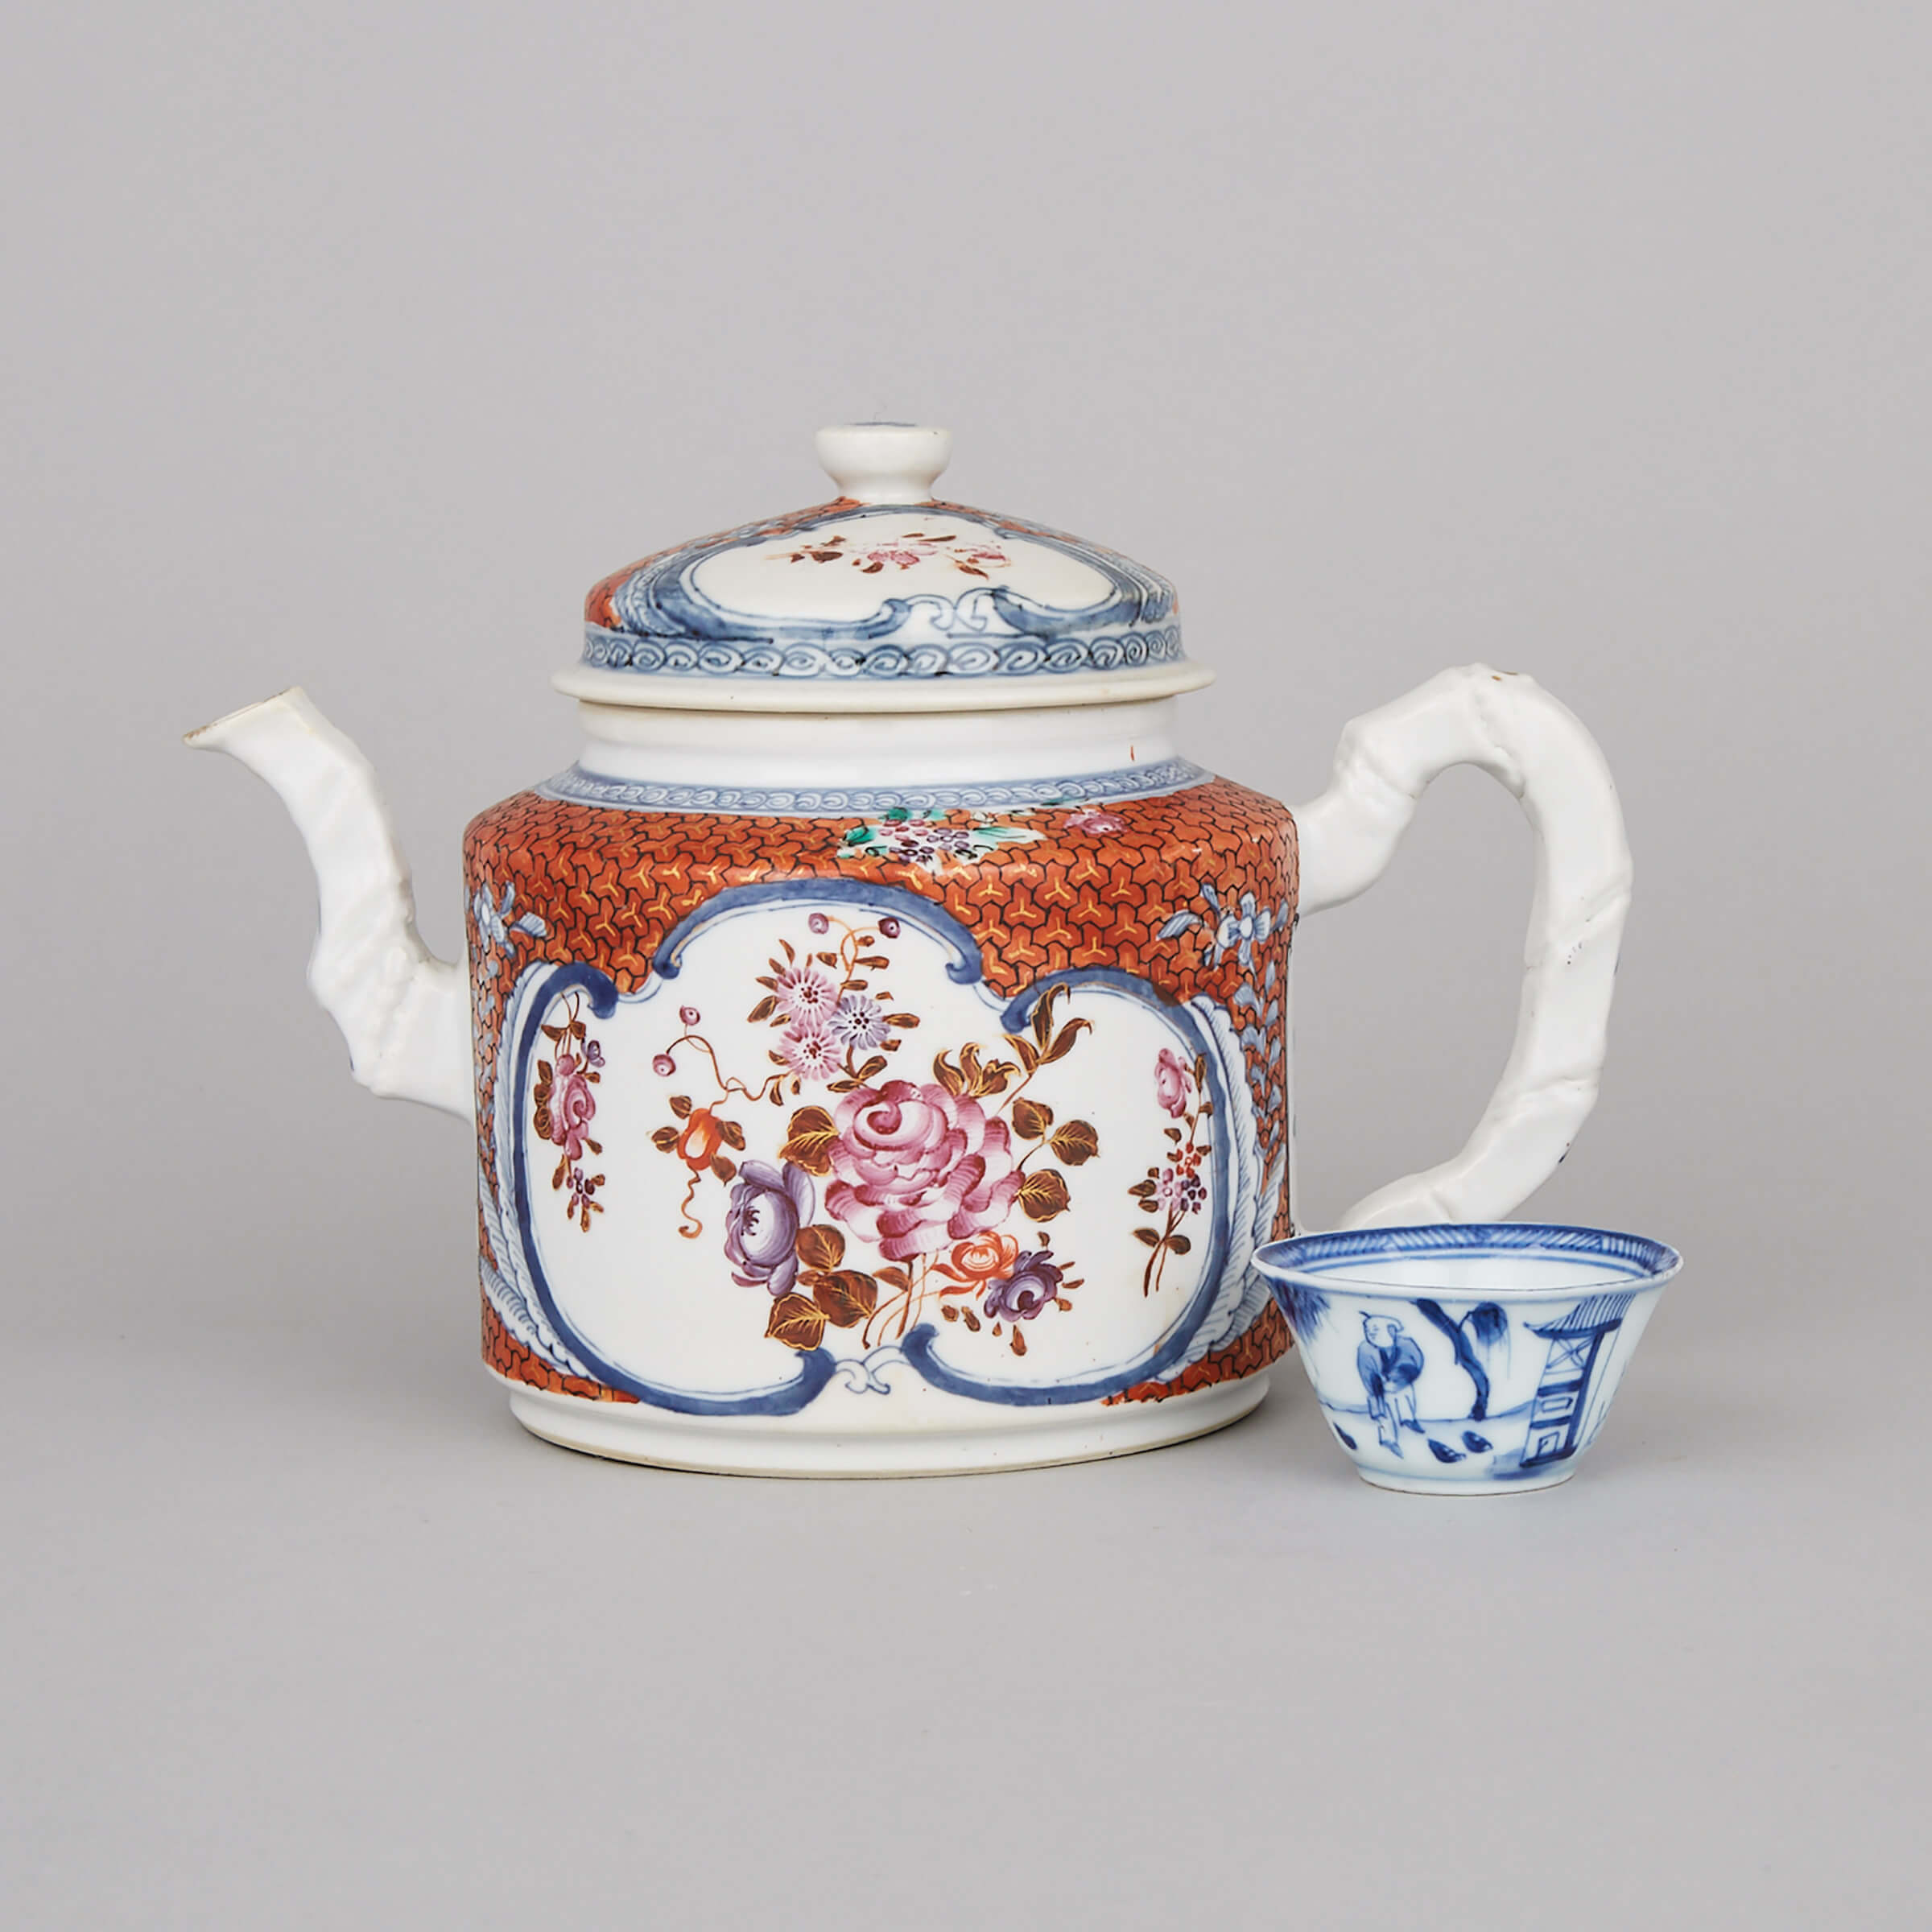 A Chinese Export Teapot, Circa 1780